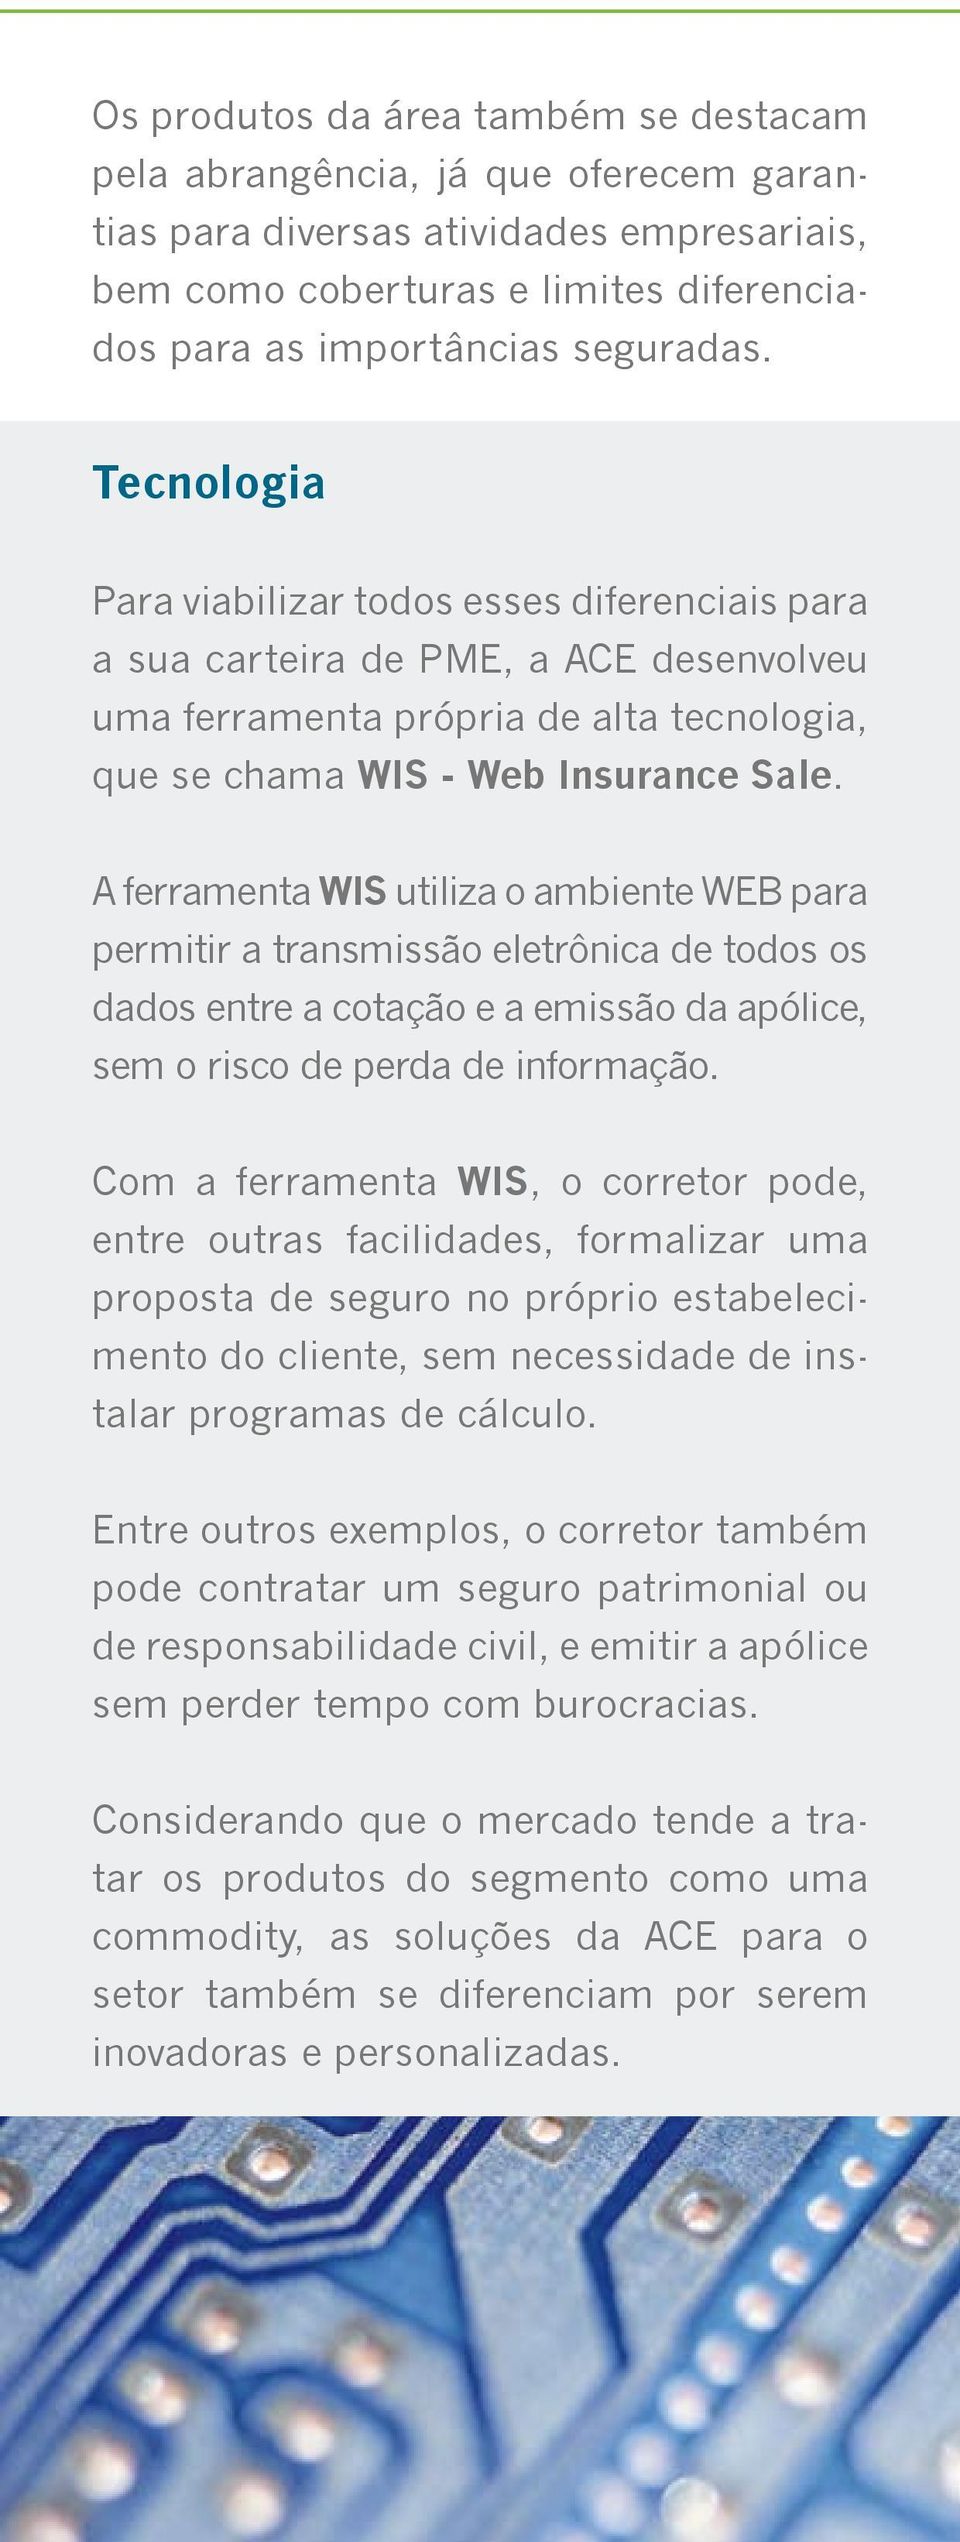 A ferramenta WIS utiliza o ambiente WEB para permitir a transmissão eletrônica de todos os dados entre a cotação e a emissão da apólice, sem o risco de perda de informação.